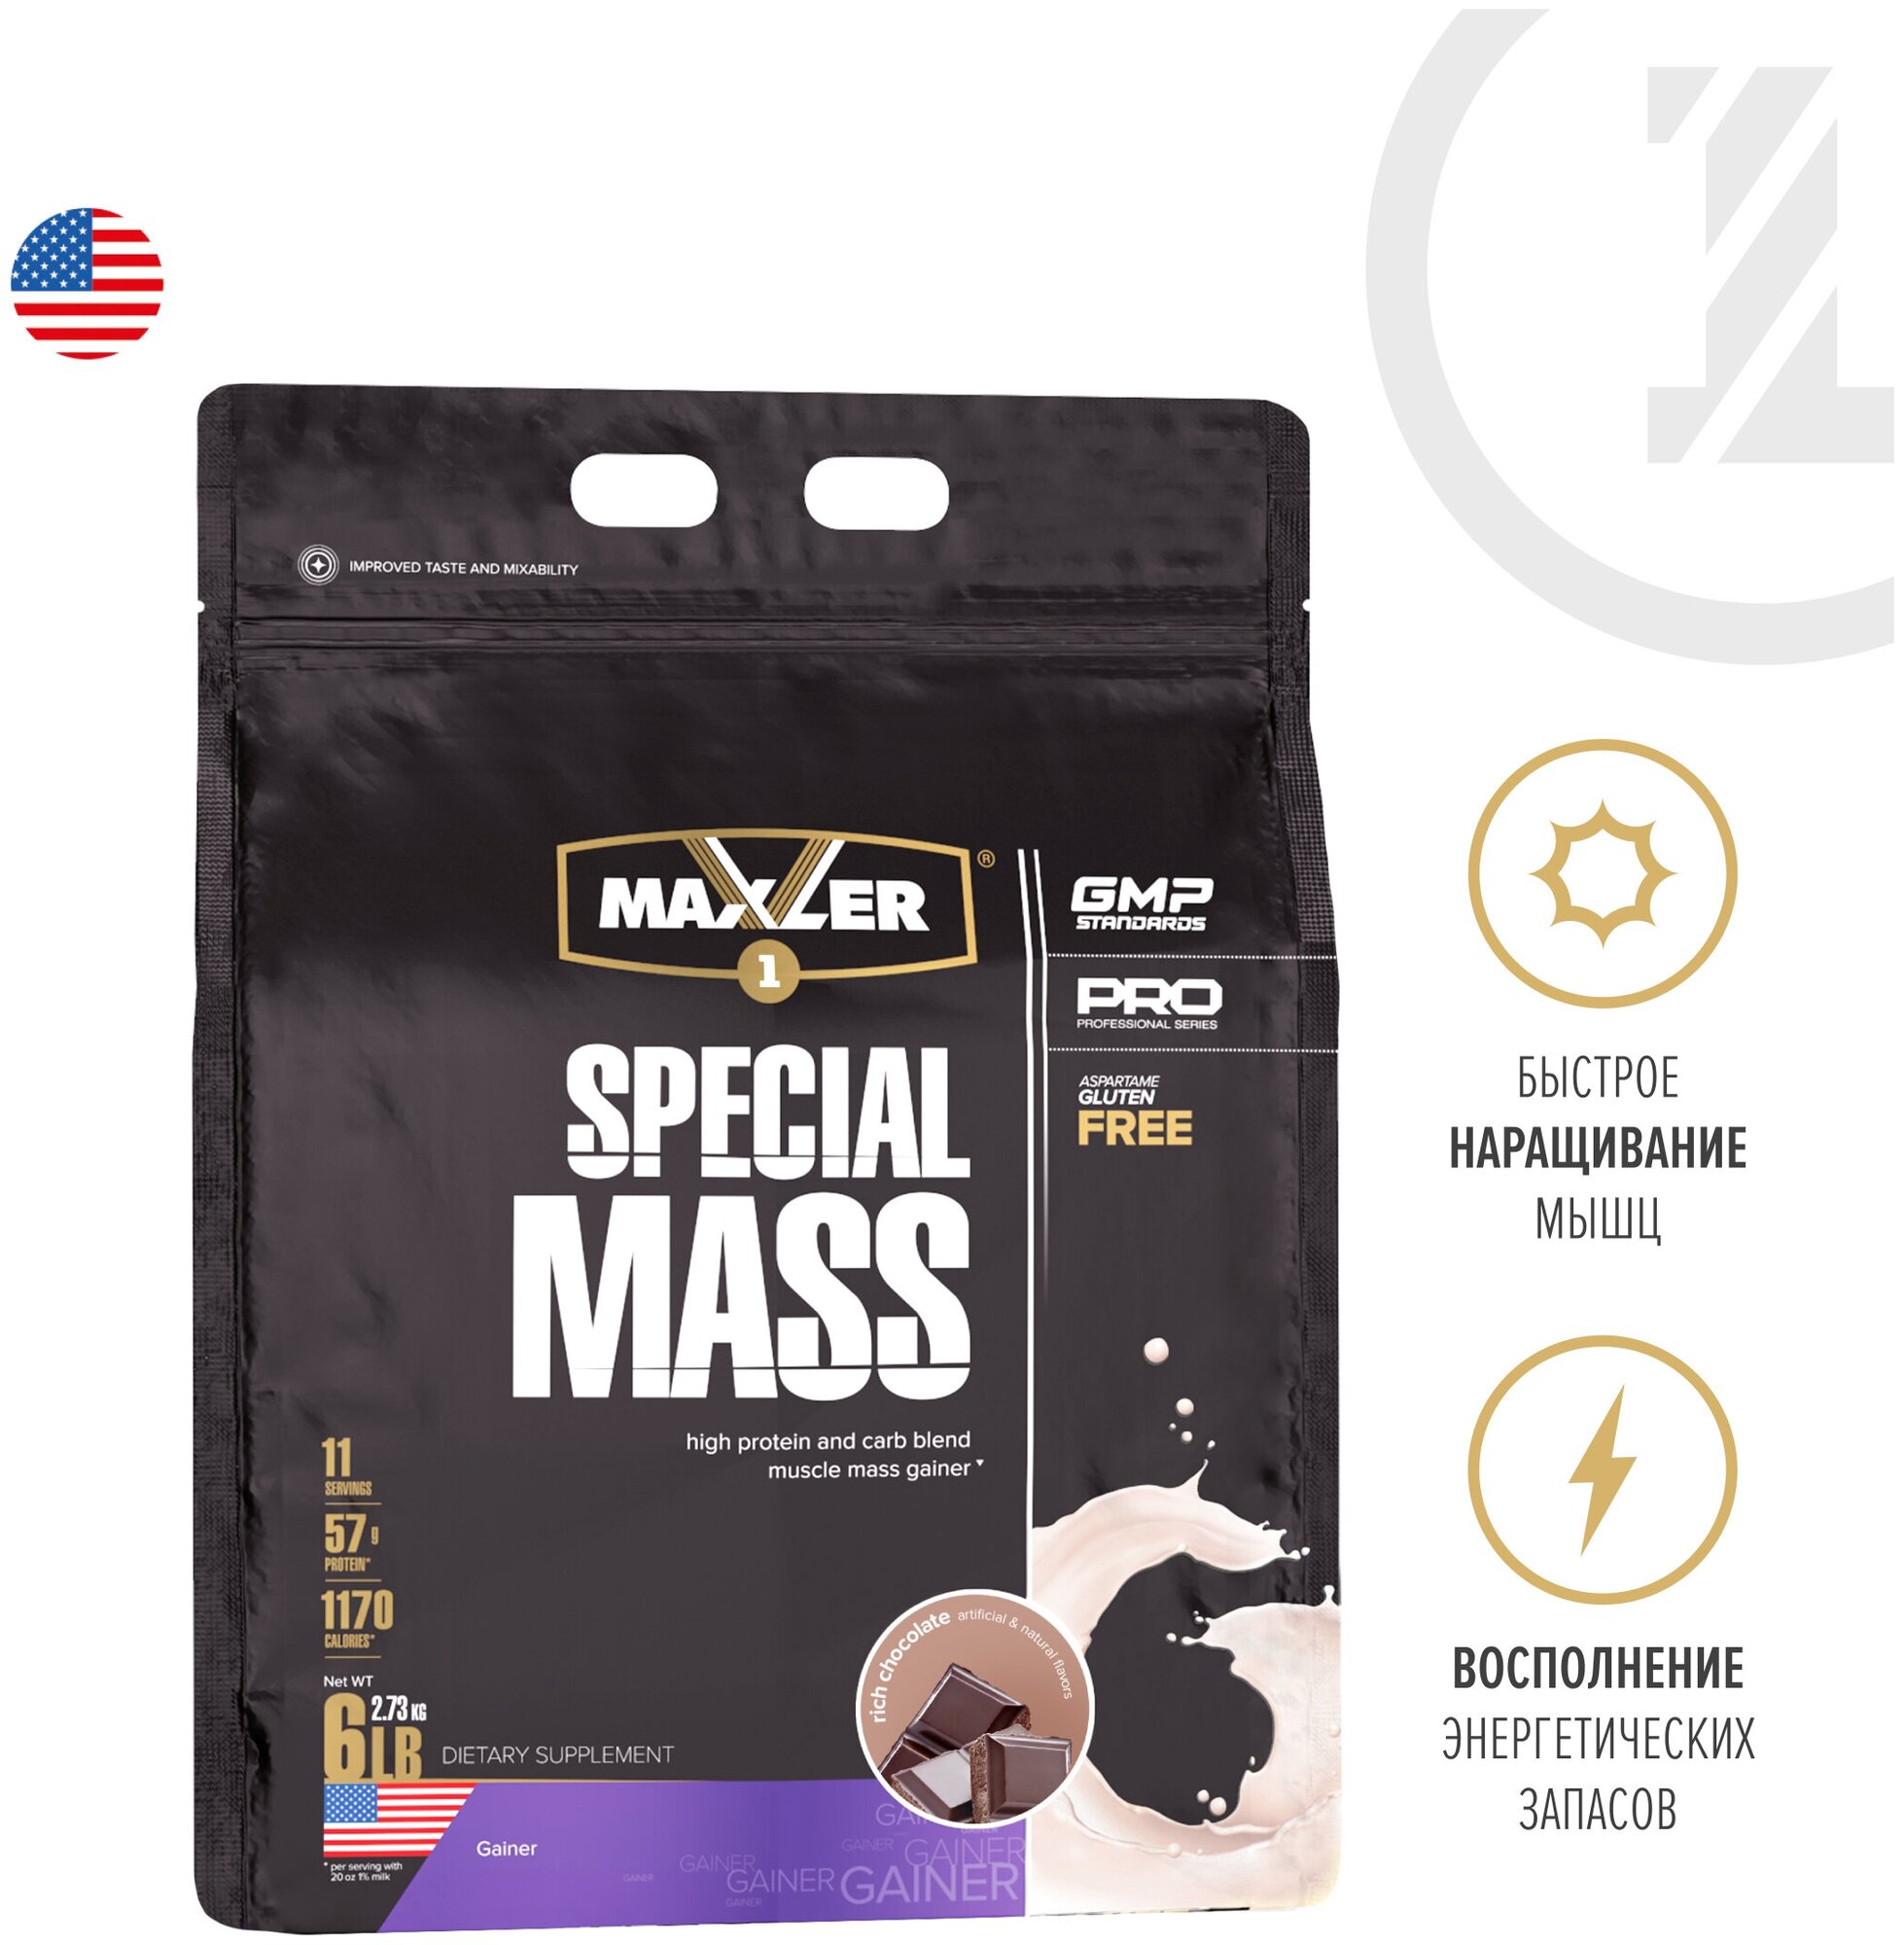 Гейнер Maxler Special Mass 6 lb (2640 гр.) + повышенное содержание протеина креатин моногидрат и BCAA - Насыщенный шоколад